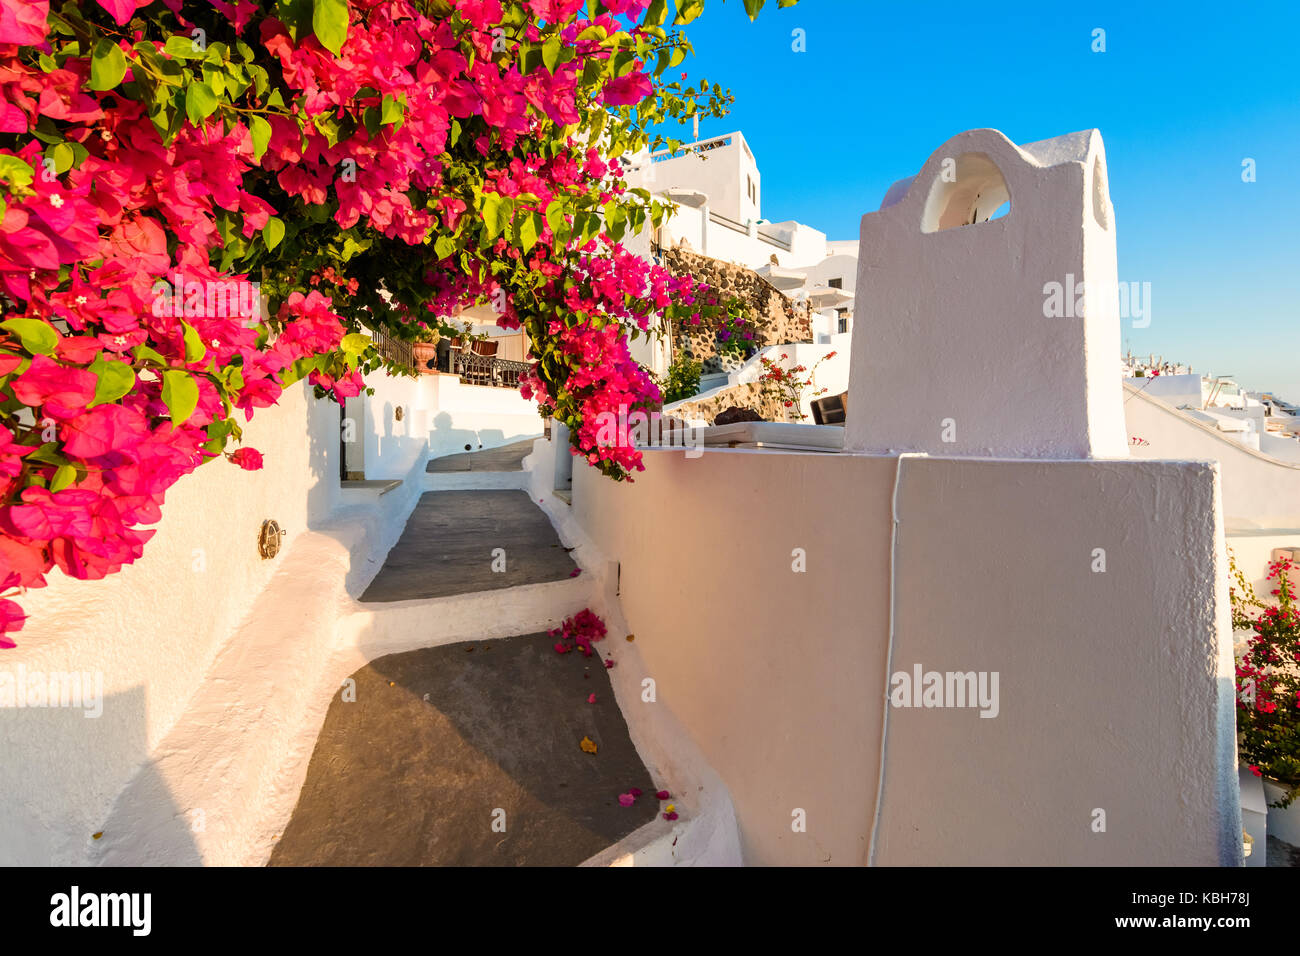 Rues de Fira, santorini island, Grèce. et traditionnel célèbre maisons blanches sur la caldeira, la mer Égée. Banque D'Images